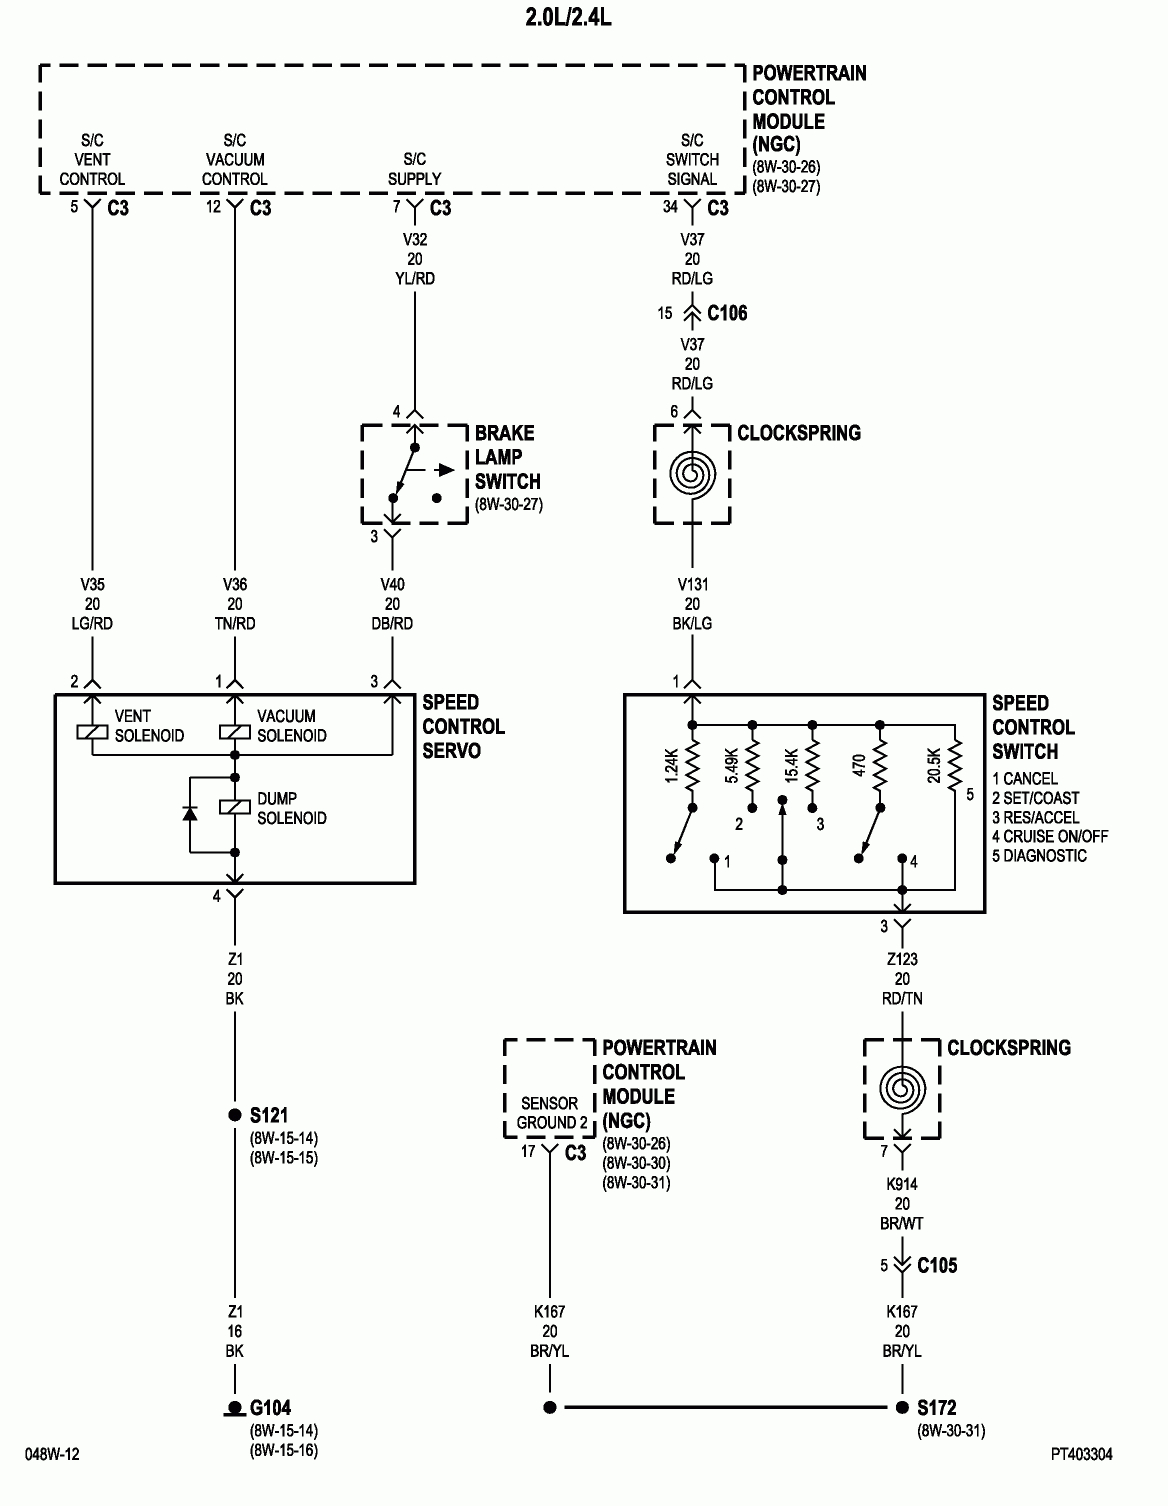 06 Pt Cruiser Wiring Diagram | Wiring Library - 2006 Pt Cruiser Cooling Fan Wiring Diagram